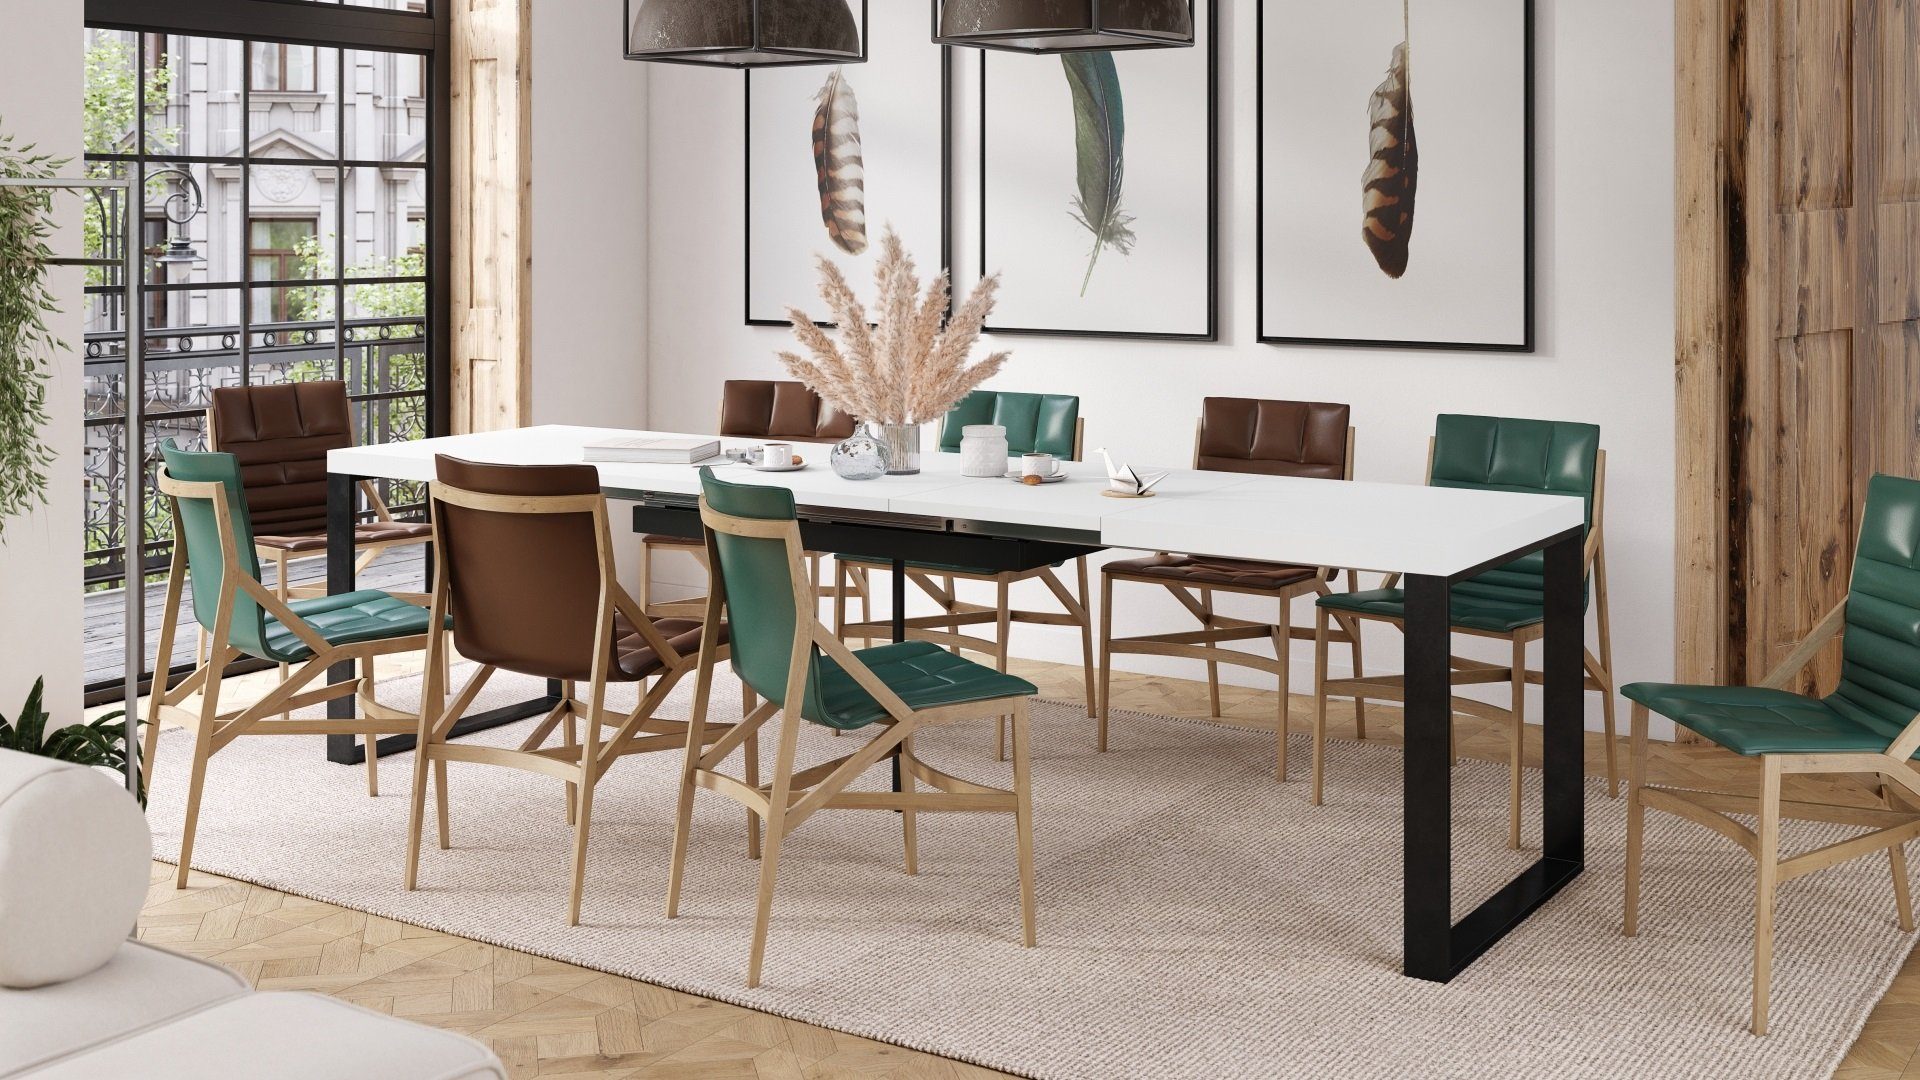 Tisch Esstisch Esstisch ausziehbar Avari 290 - Design bis Schwarz Weiß 140 cm Mazzoni matt matt